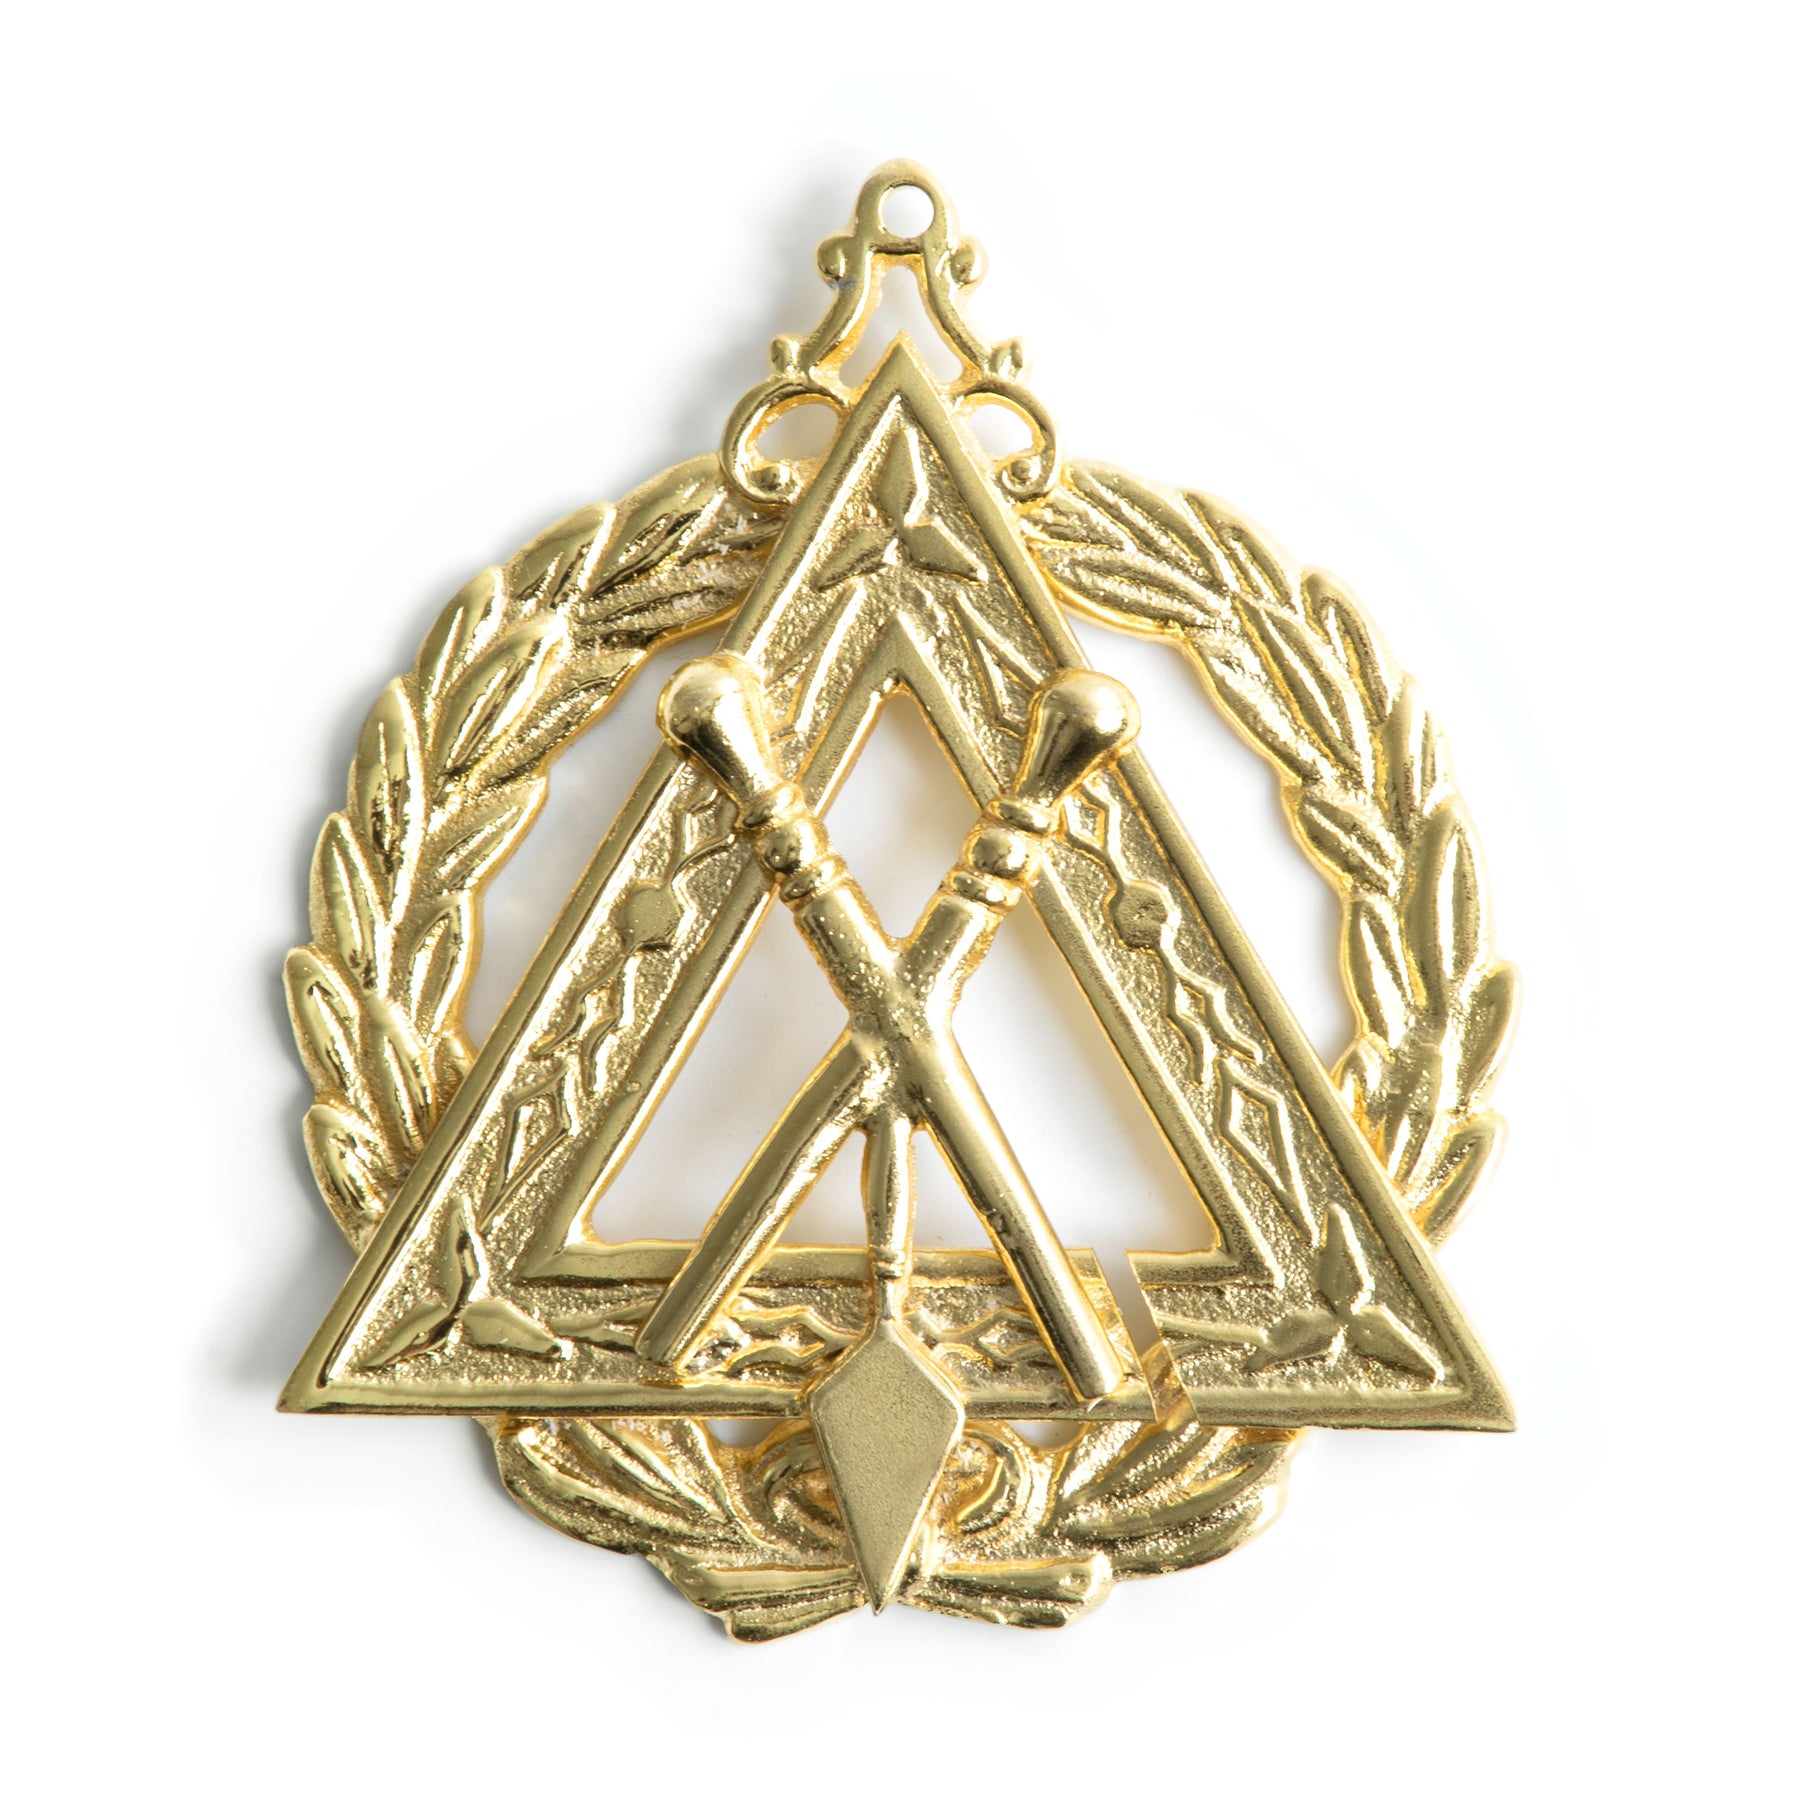 Grand Steward Royal & Select Masters Officer Collar Jewel - Gold Plated - Bricks Masons